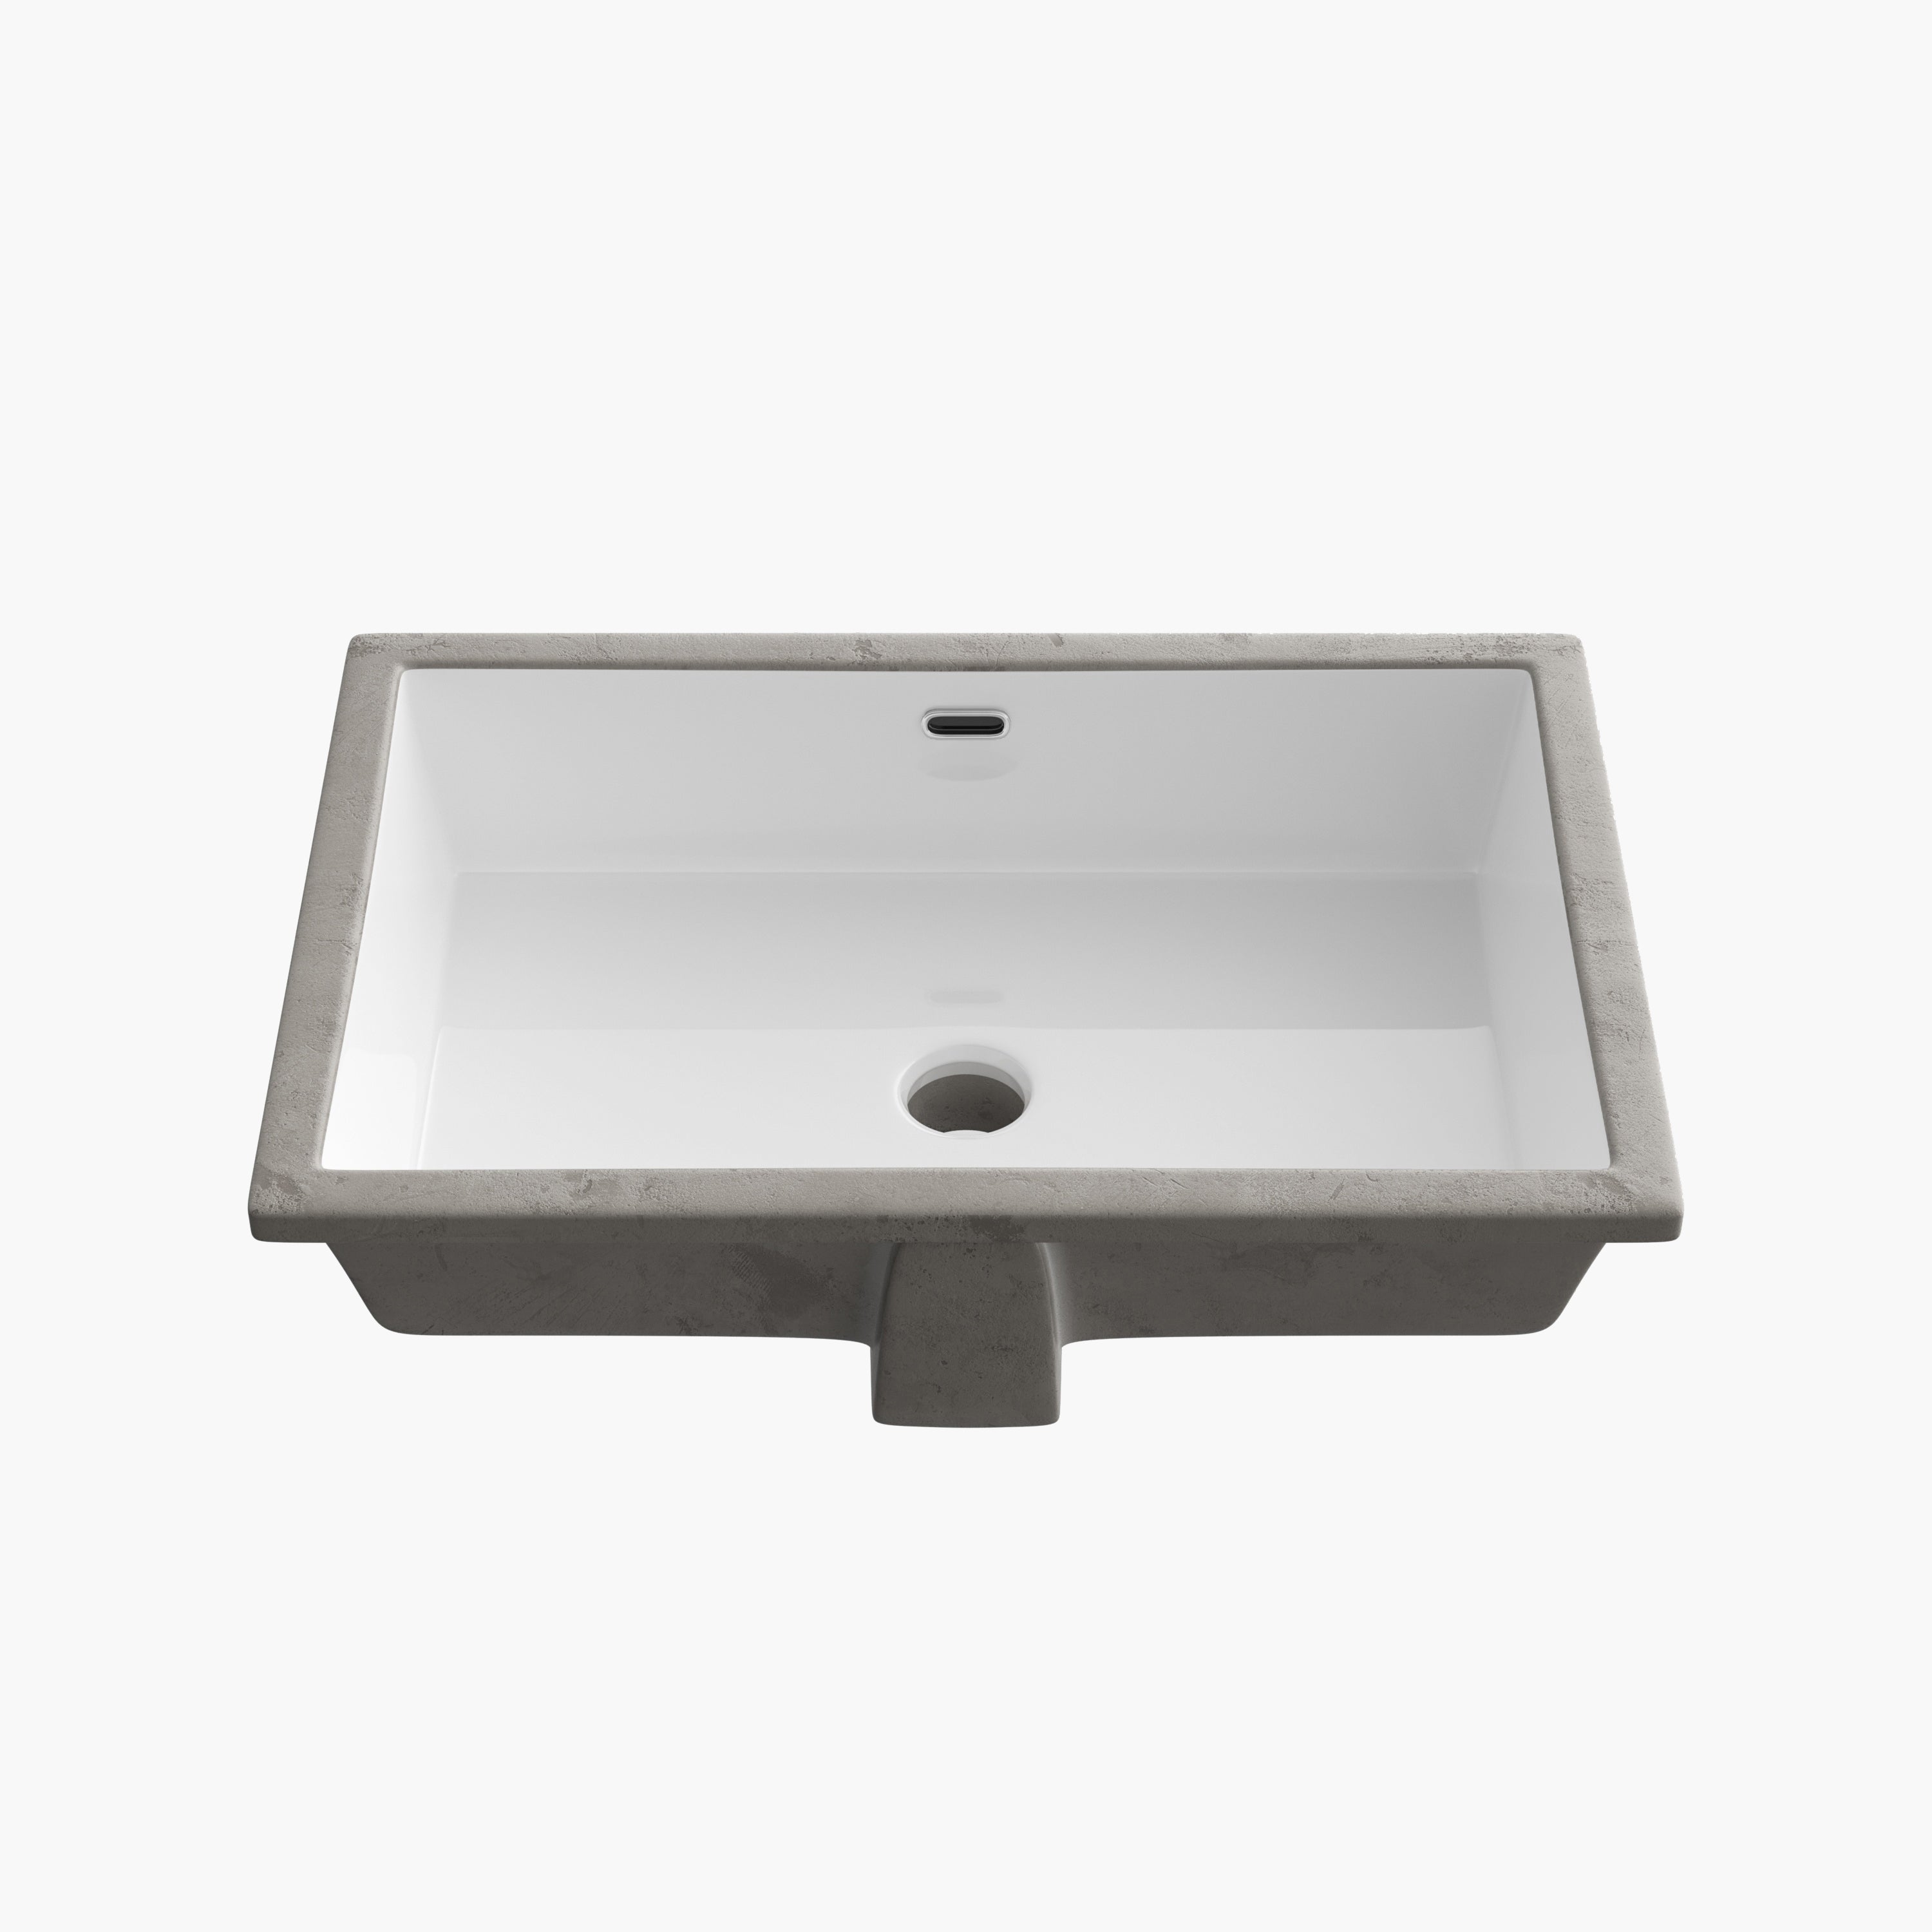 HOROW 24 Inch Undermount Kitchen Sink Bathroom Undermount Rectangular Sinks Model HWTP-S6039D